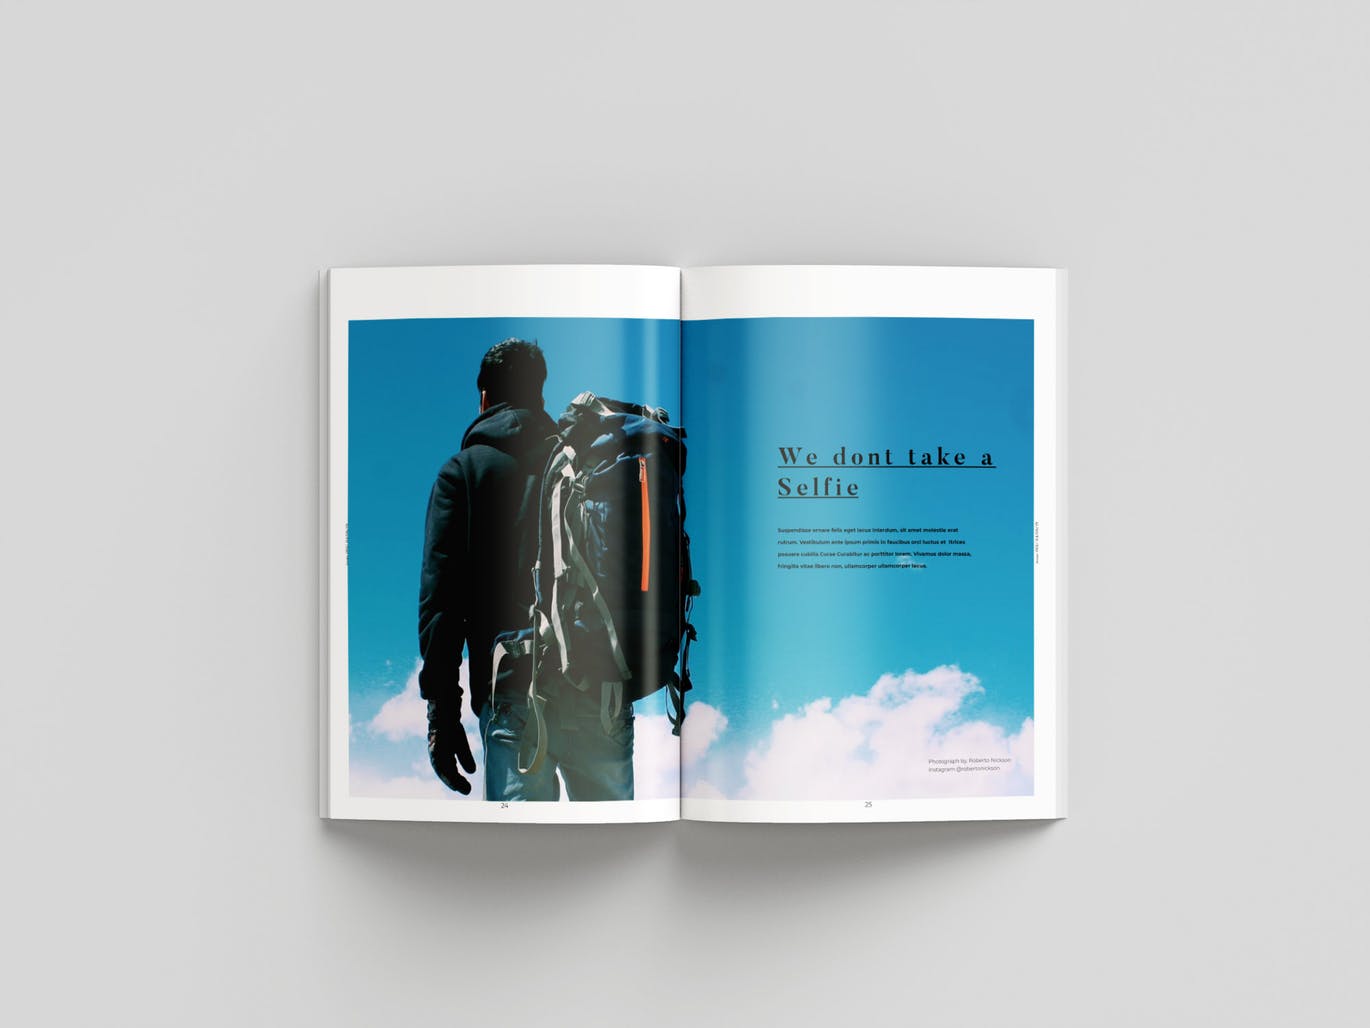 旅行/摄影/品牌主题杂志设计INDD模板 Magazine插图(13)